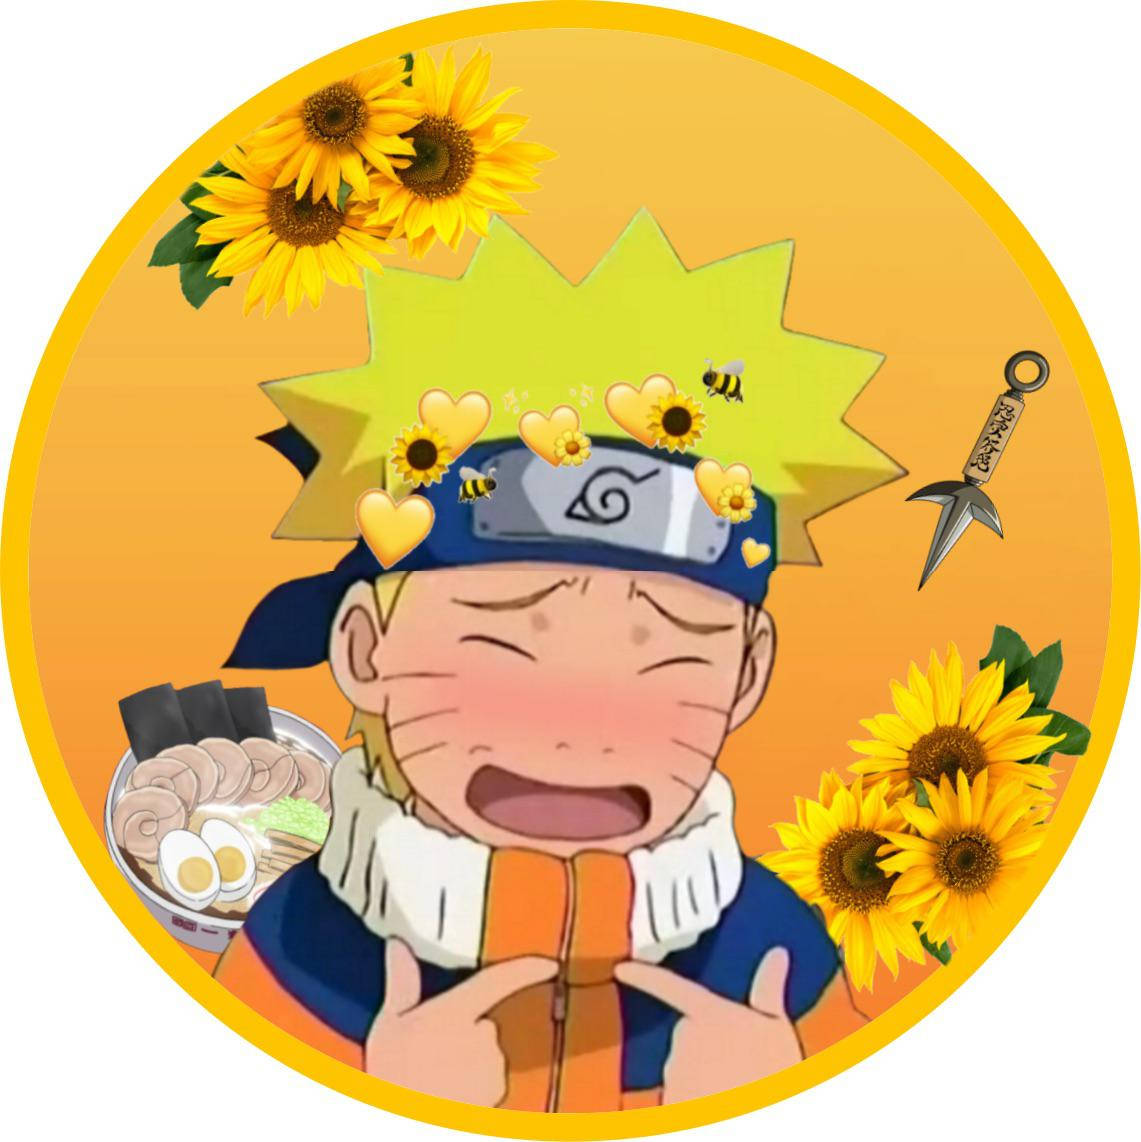 Narutoprofilbild Mit Sonnenblumen Wallpaper